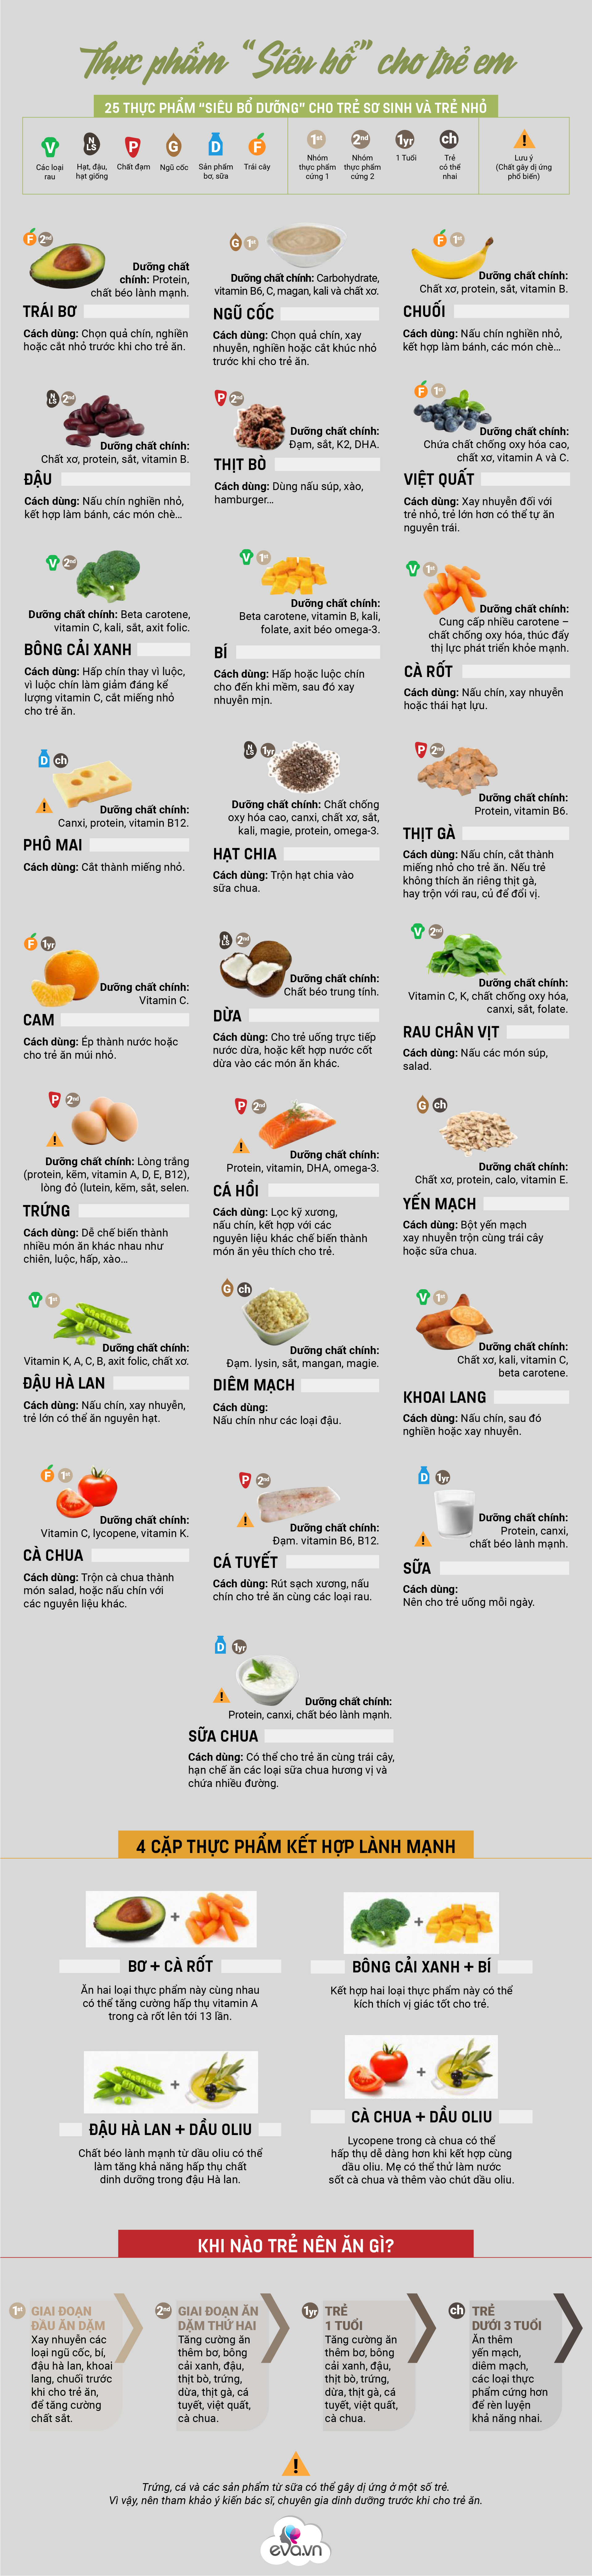 Infographic: Bảng tổng hợp top 25 thực phẩm siêu bổ giàu chất cho trẻ, cứ ăn là khỏe mạnh thông minh - 2